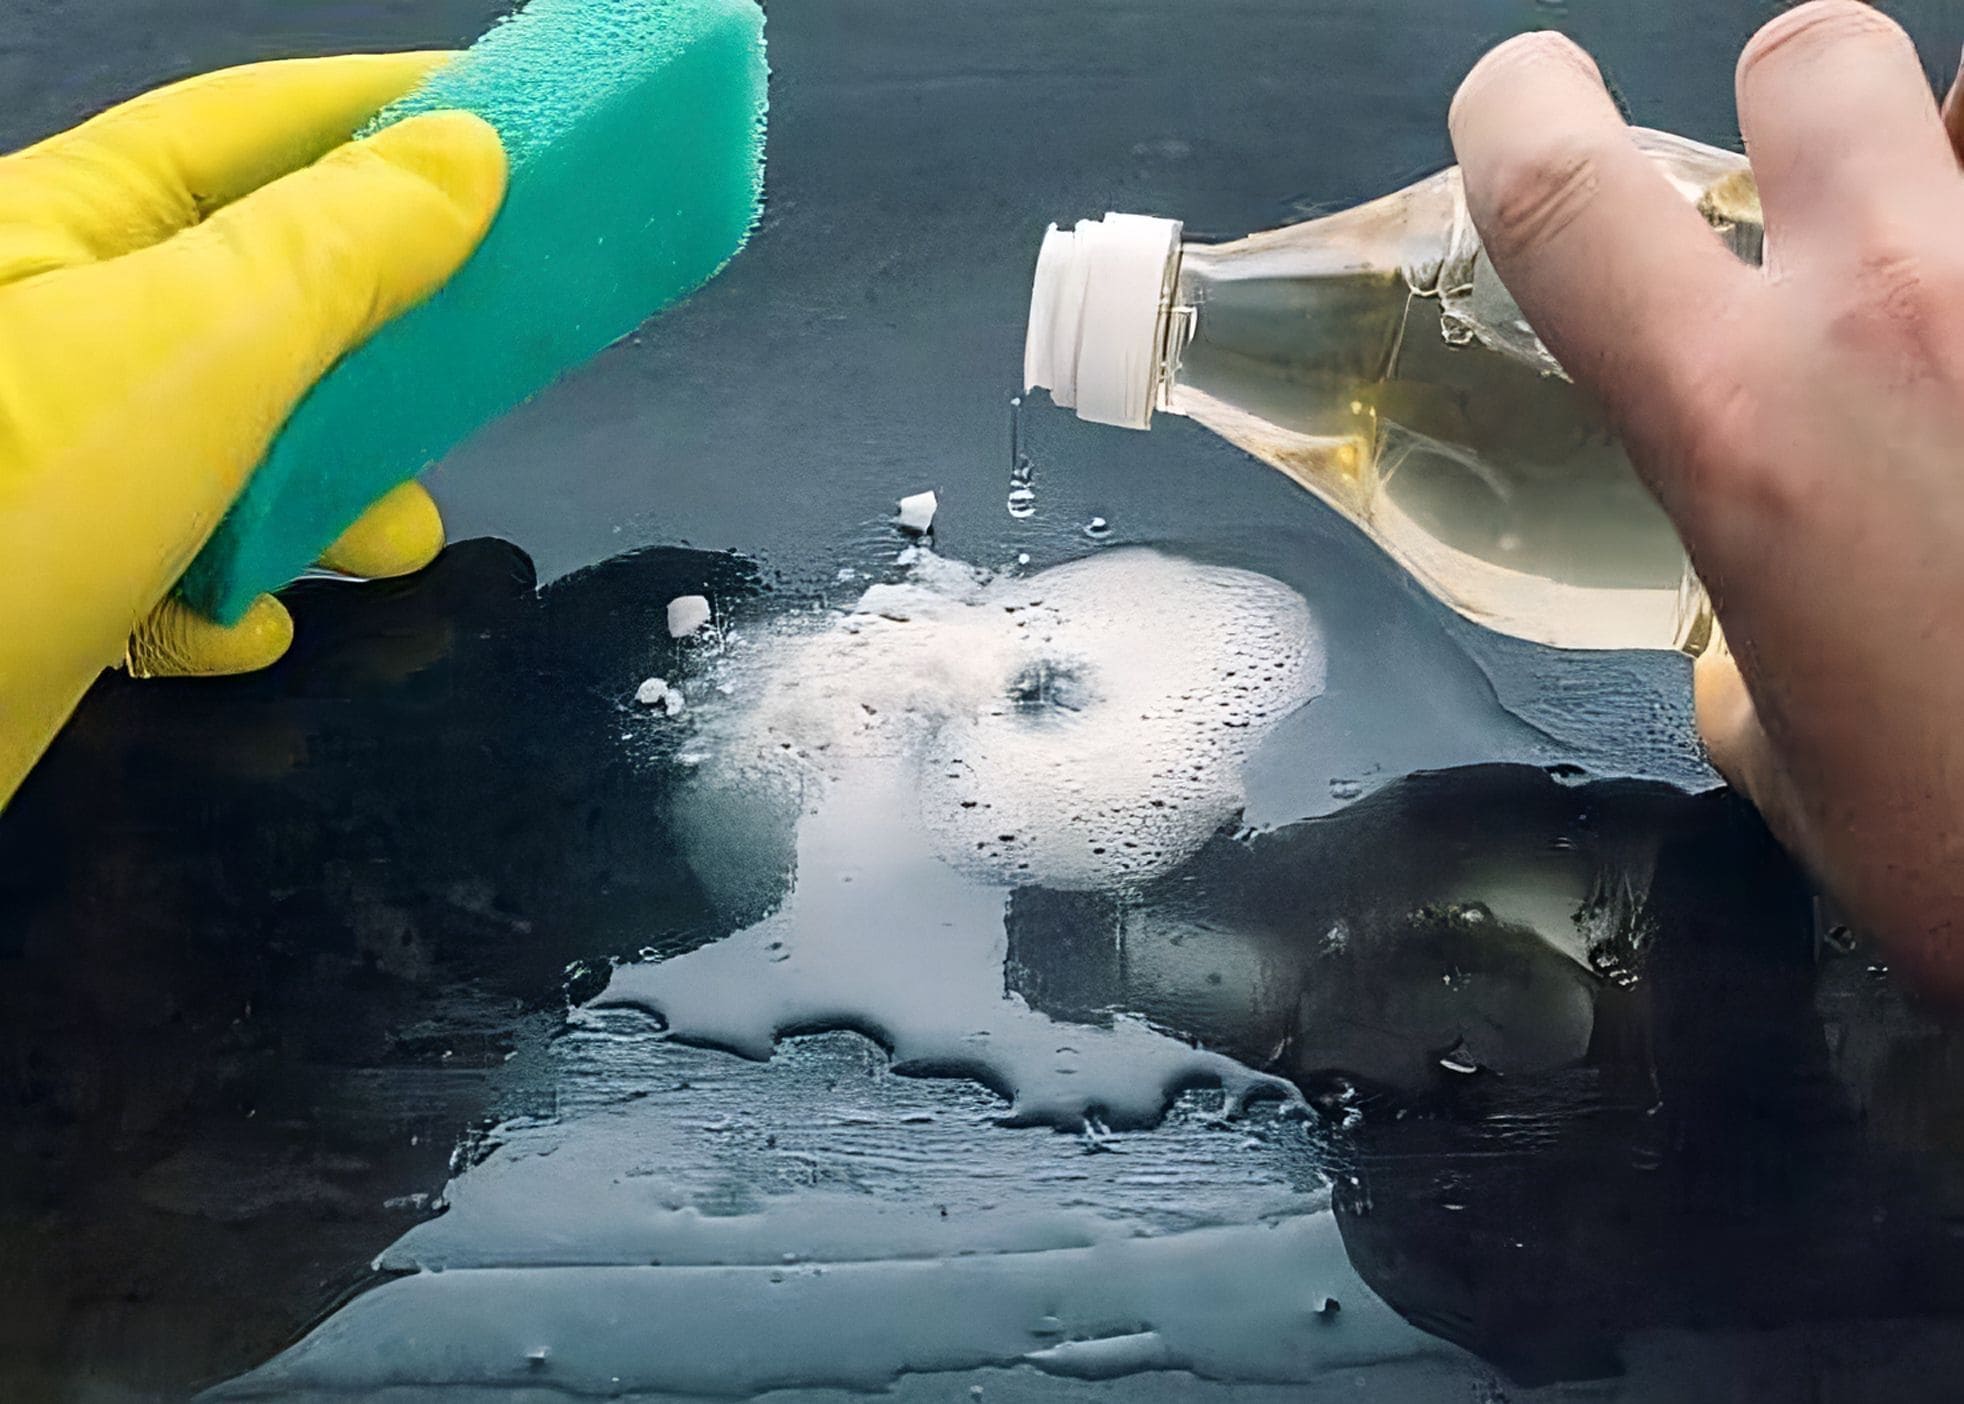 Une aide ménagère à domicile nettoie une surface avec du vinaigre blanc